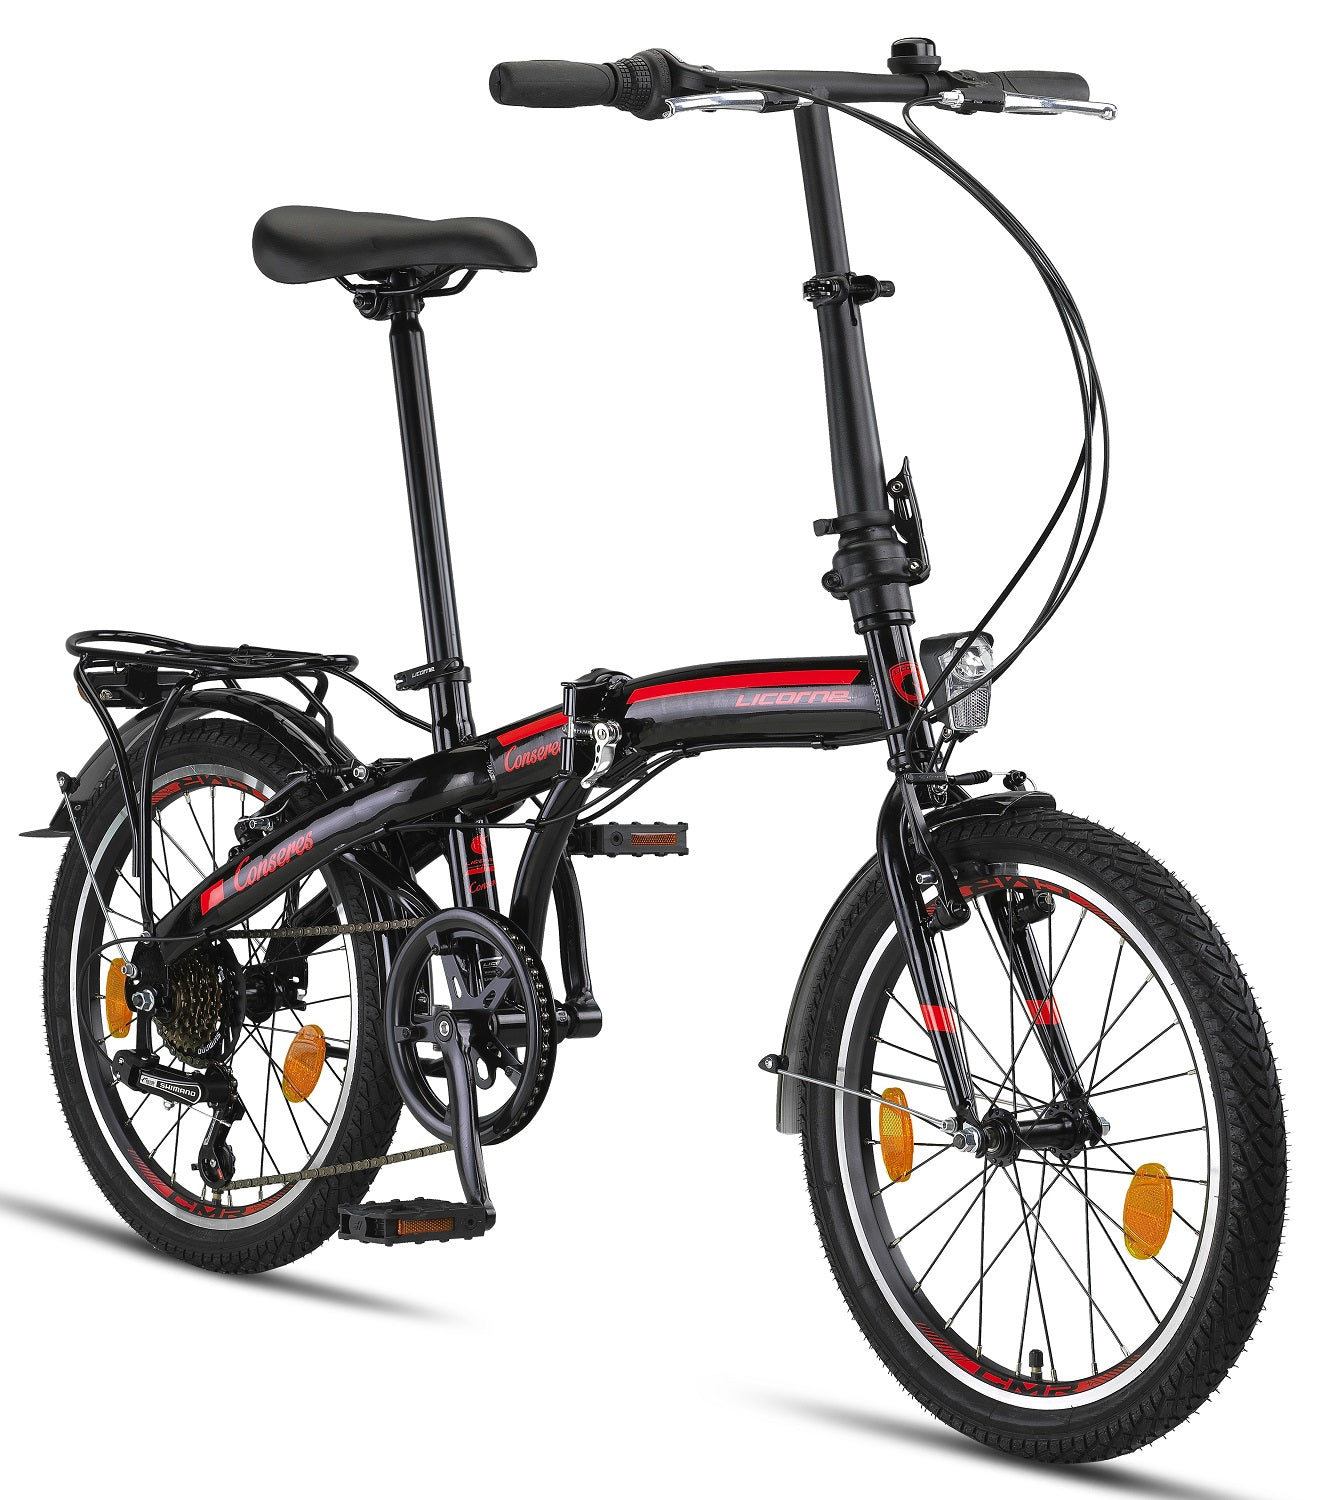 Licorne Bike Conseres Premium Falt Bike en 20 pouces - Vélo pour hommes, garçons, filles et femmes - Shimano 6 vitesses - Vélo hollandais